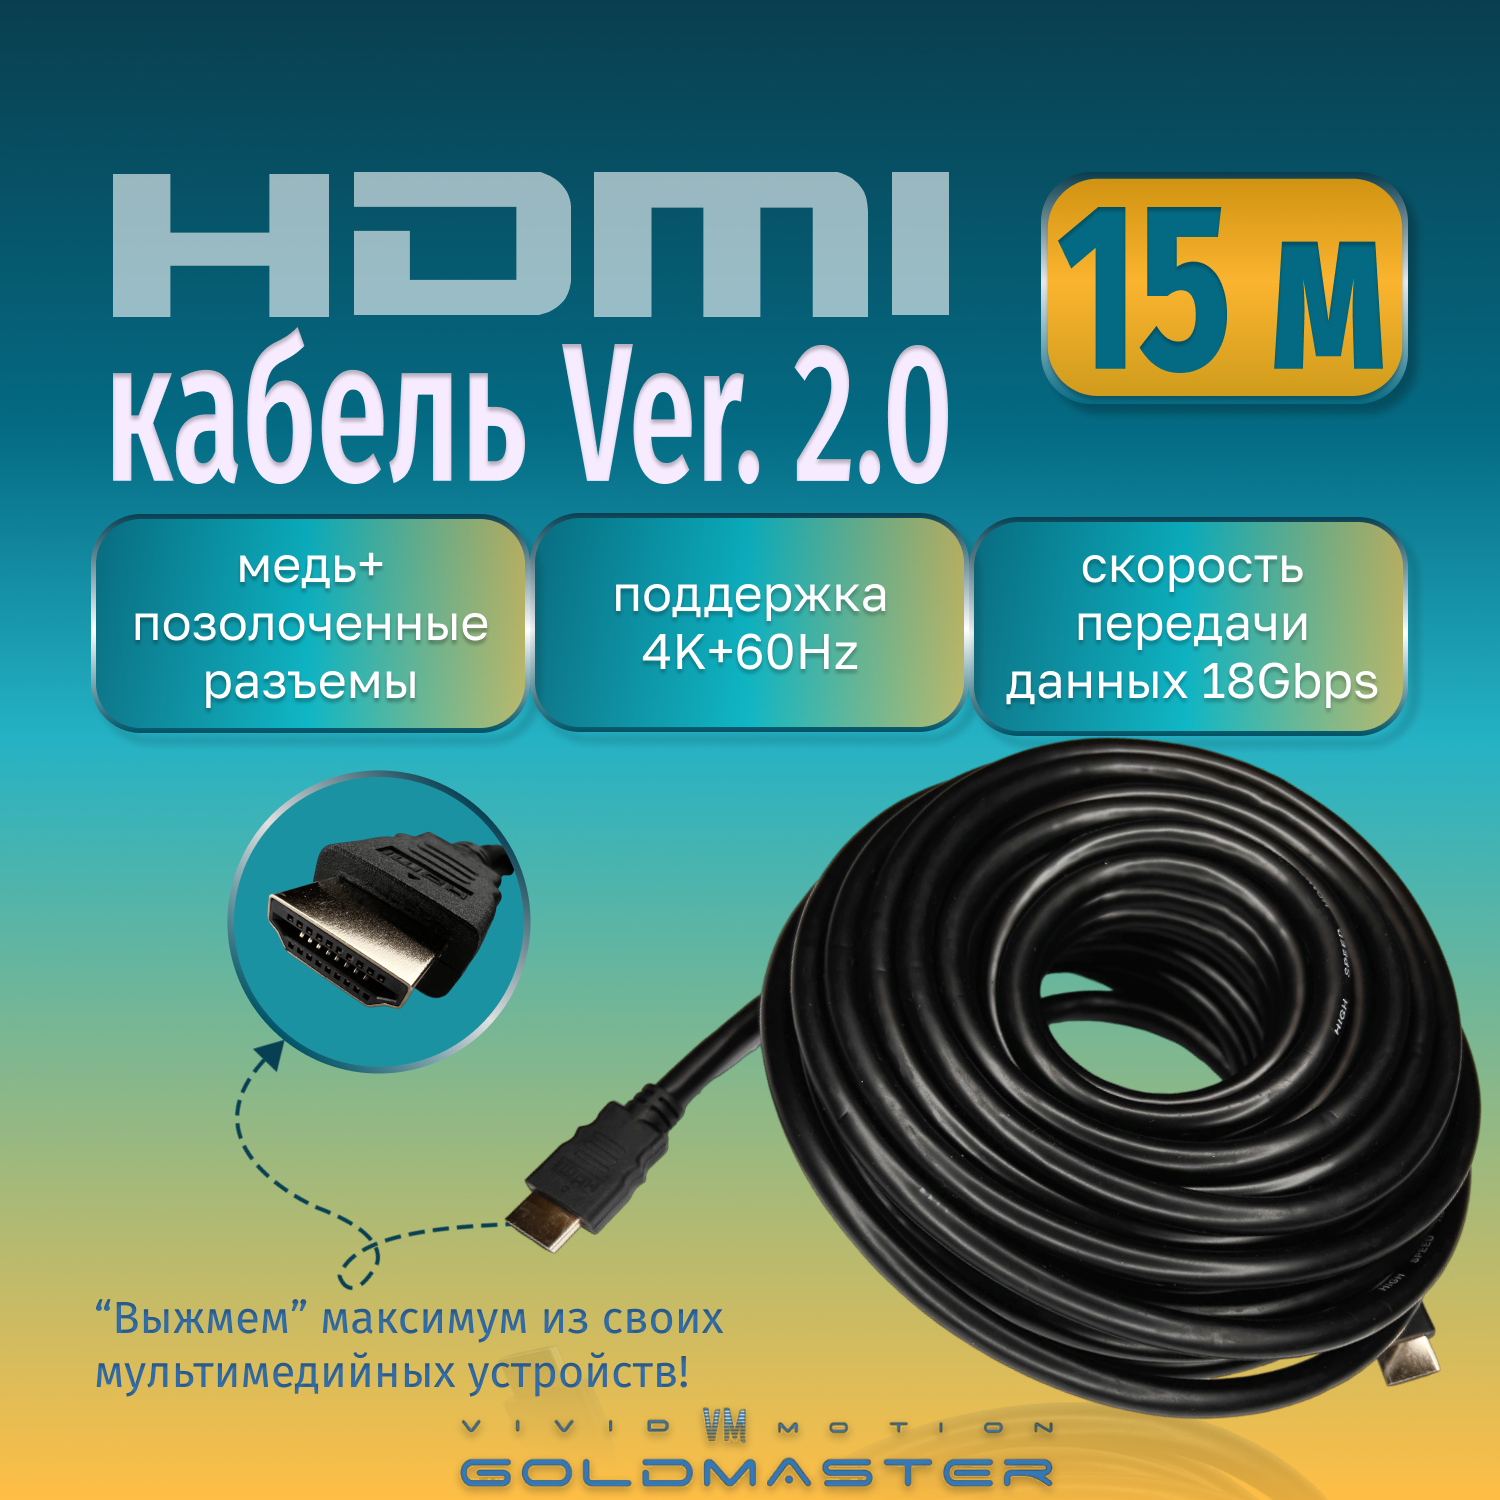 Кабель GoldMaster HDMI 15м 2м 3 м 5м 10м 15м. Шнур HDMI - HDMI -15м-Ver 1.4; 2 3 5 10 15 Ver 2.0 GoldMaster с позолоченными коннекторами